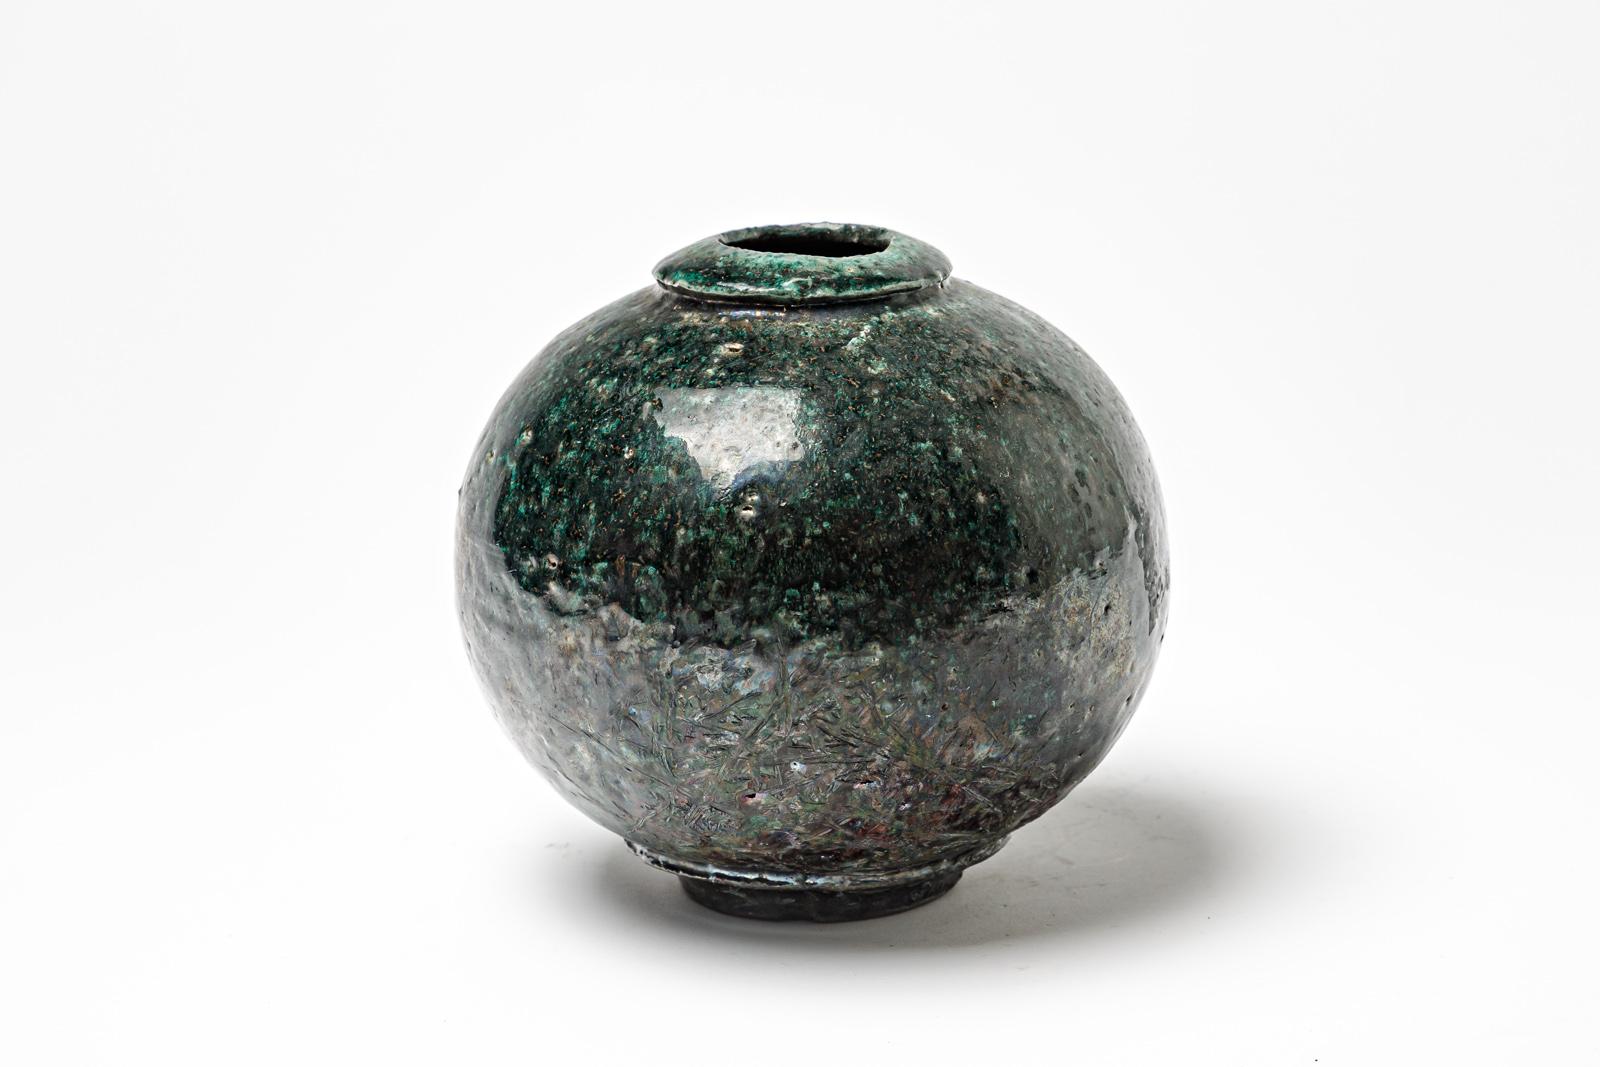 Vase en céramique émaillée verte et noire de Gisèle Buthod Garçon. 
Raku a tiré. Monogramme de l'artiste sous la base. Vers 1980-1990. 
H : 6.3' x 5.1' pouces.